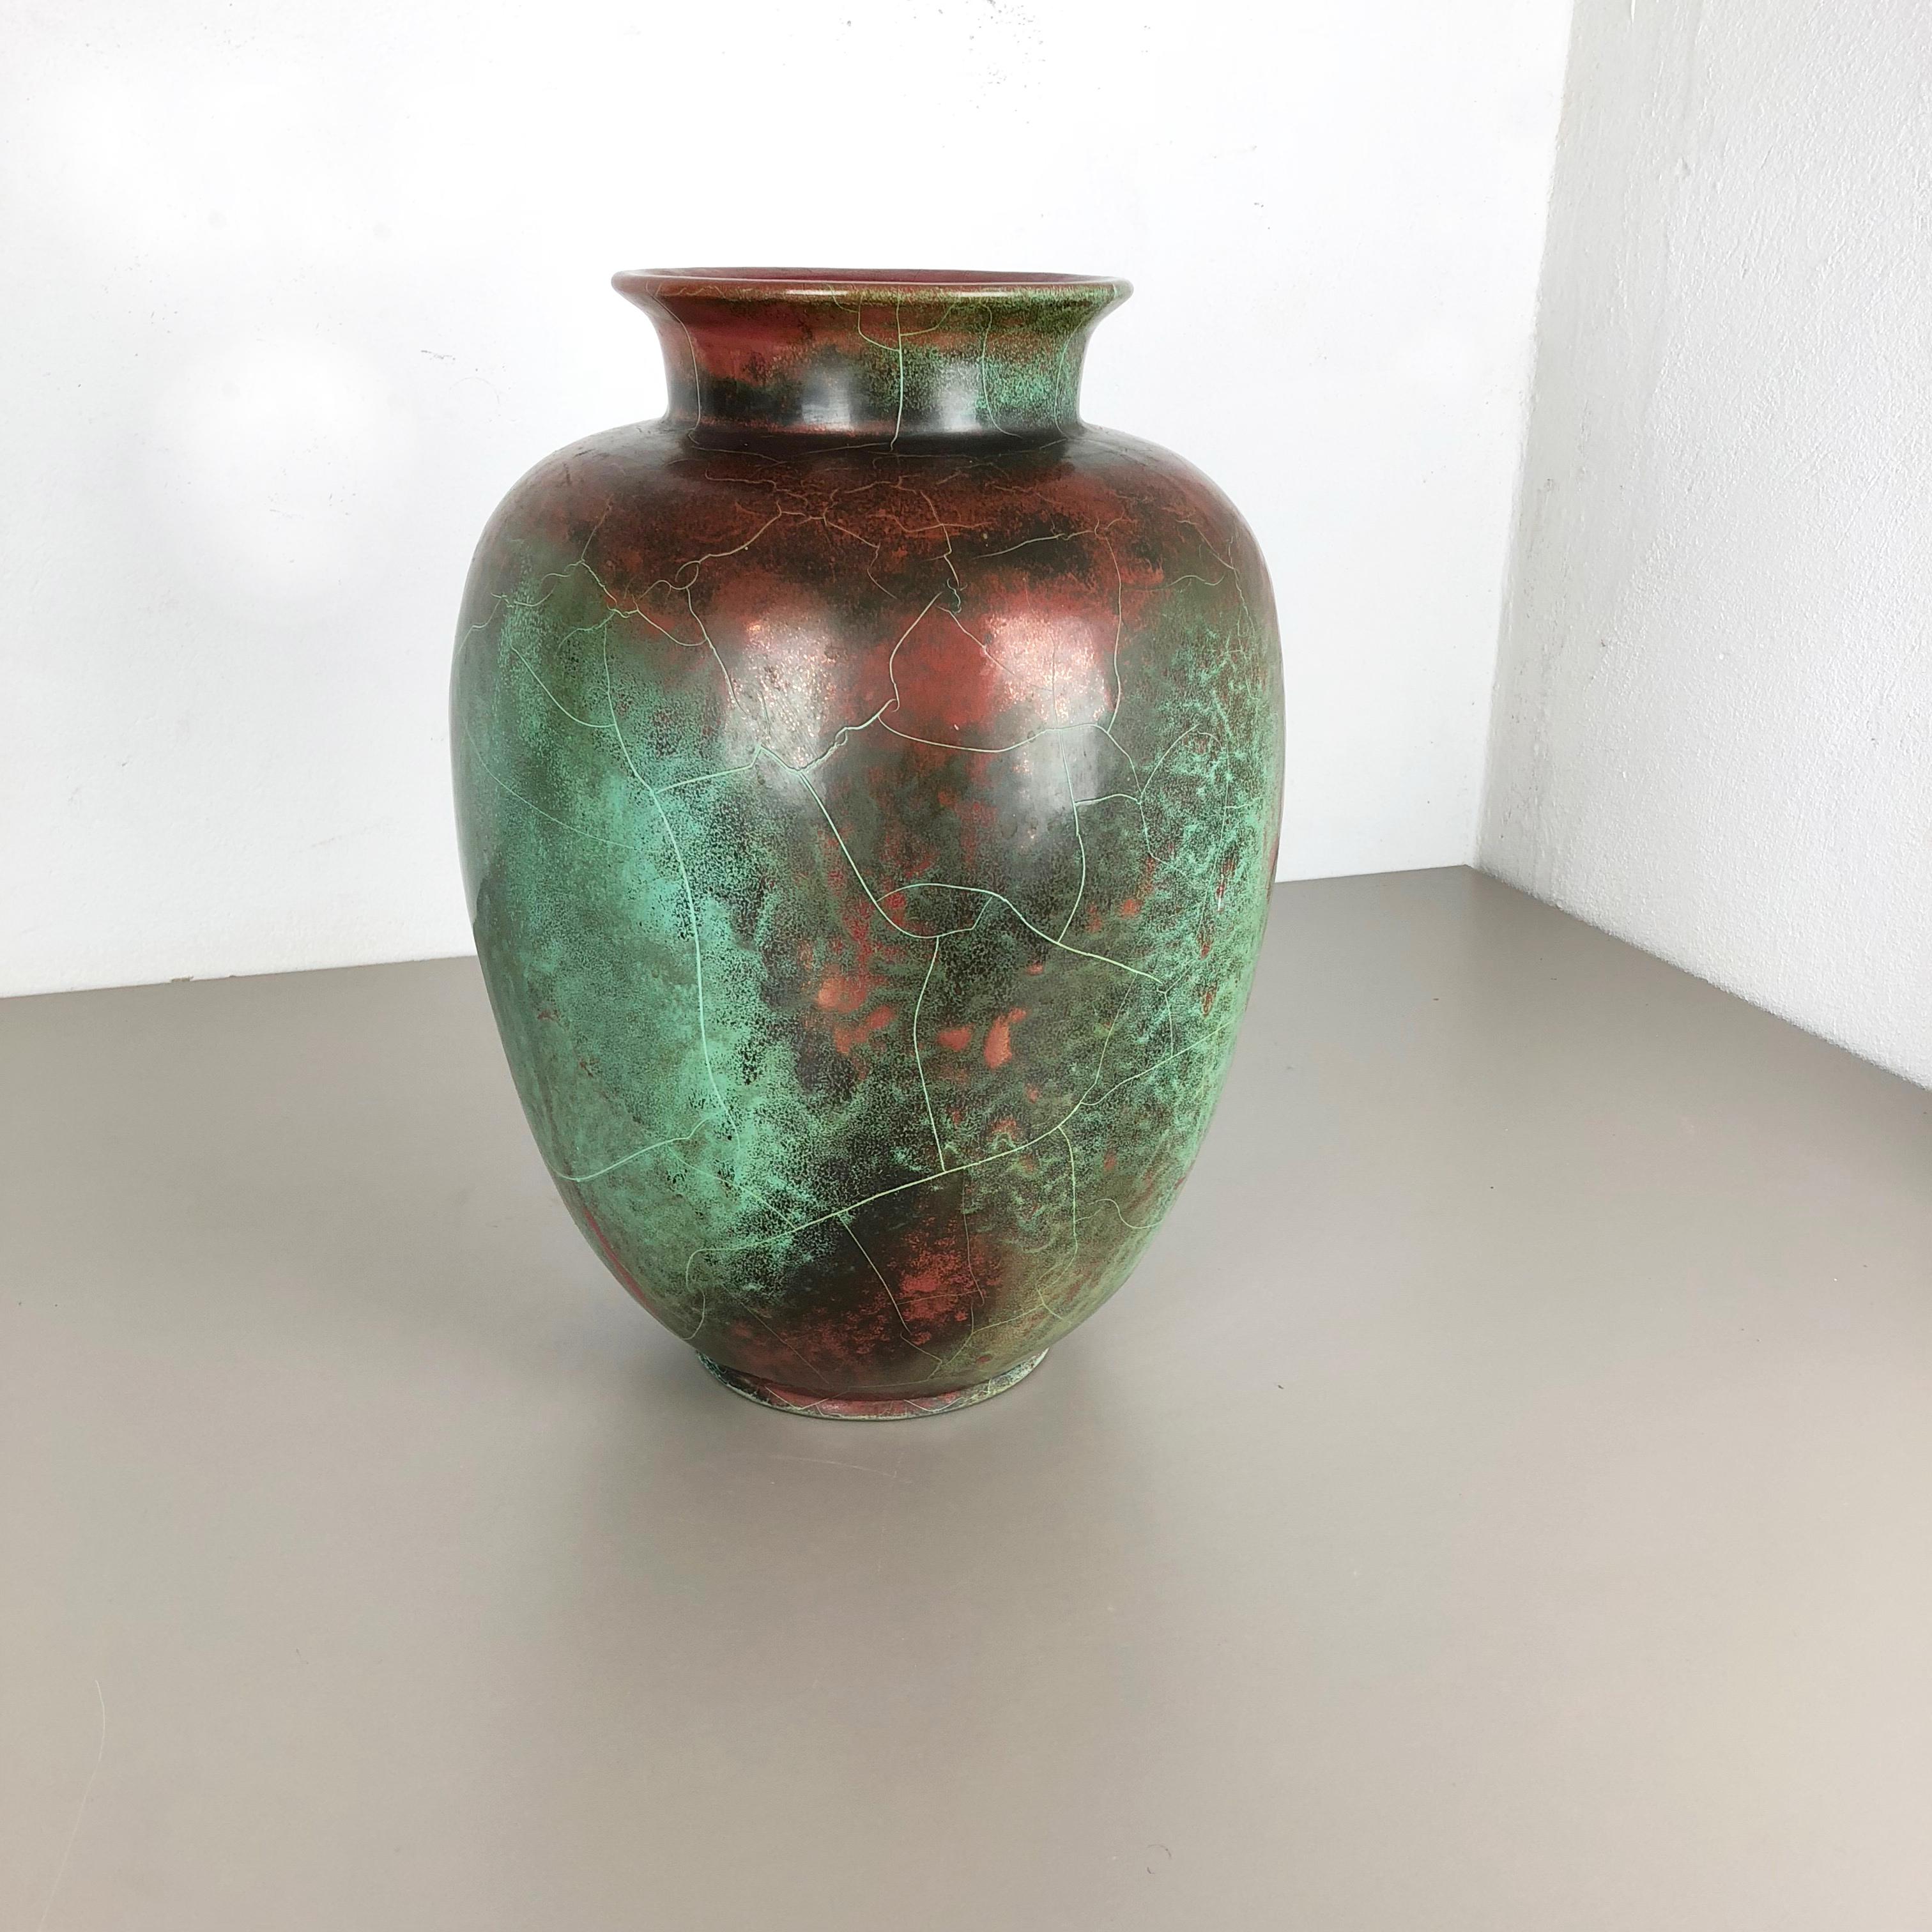 Artikel:

Vase aus Keramik-Steinzeug


Designer und Produzent:

Richard Uhlemeyer (geb. 3. Oktober 1900 in Göttingen, 4. November 1954, nach anderen Angaben 7. November 1954, in Hannover) war ein deutscher Handwerker, Unternehmer und von 1949